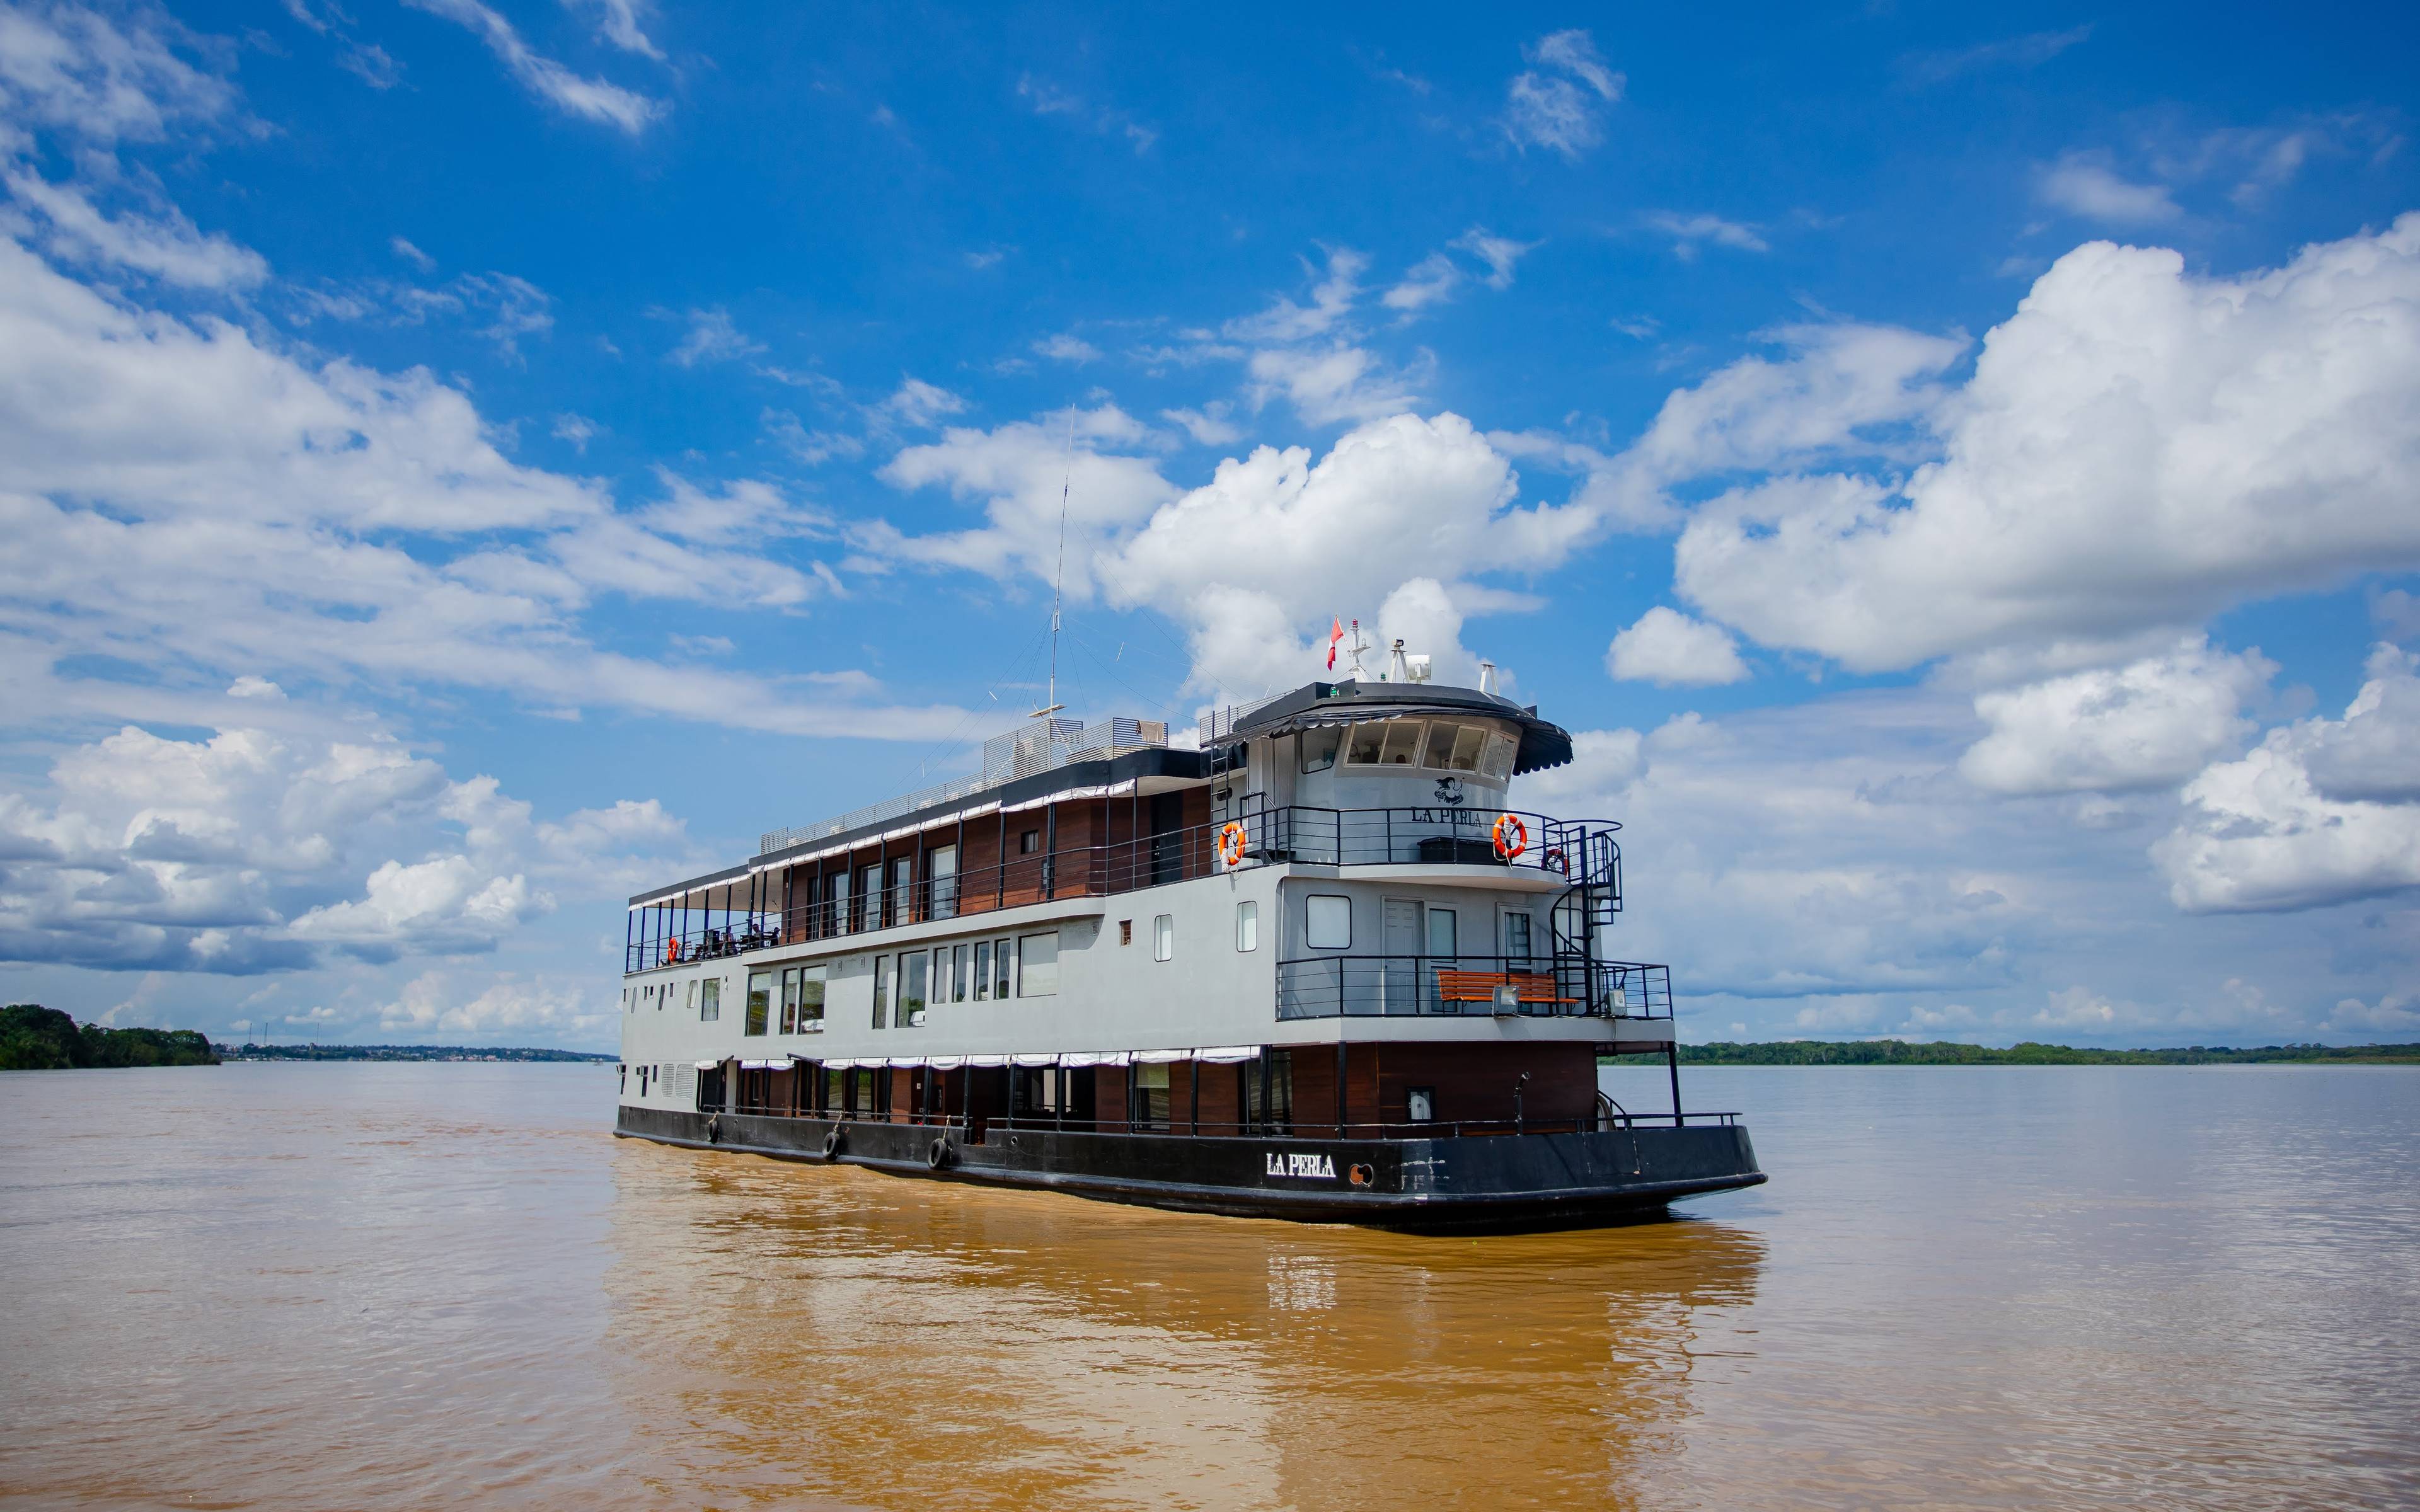 La Perla Kreuzfahrt: Start einer authentischen Amazonas-Kreuzfahrt - Tag 1/7